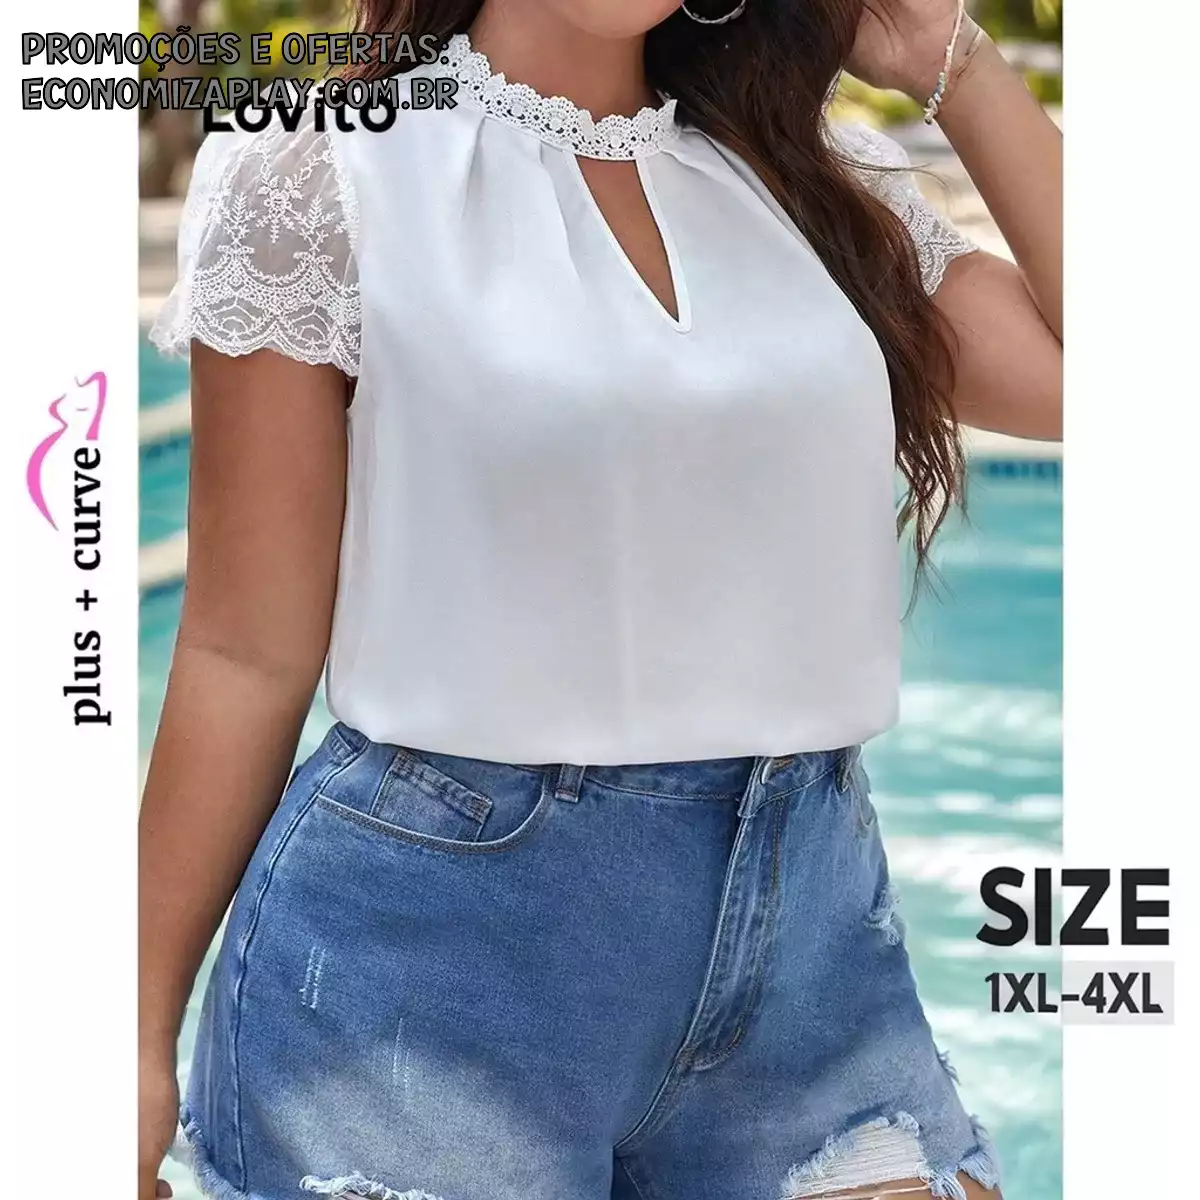 Lovito Plus Size Blusa Feminina Romântica Lisa com Recorte e Renda LBL09416